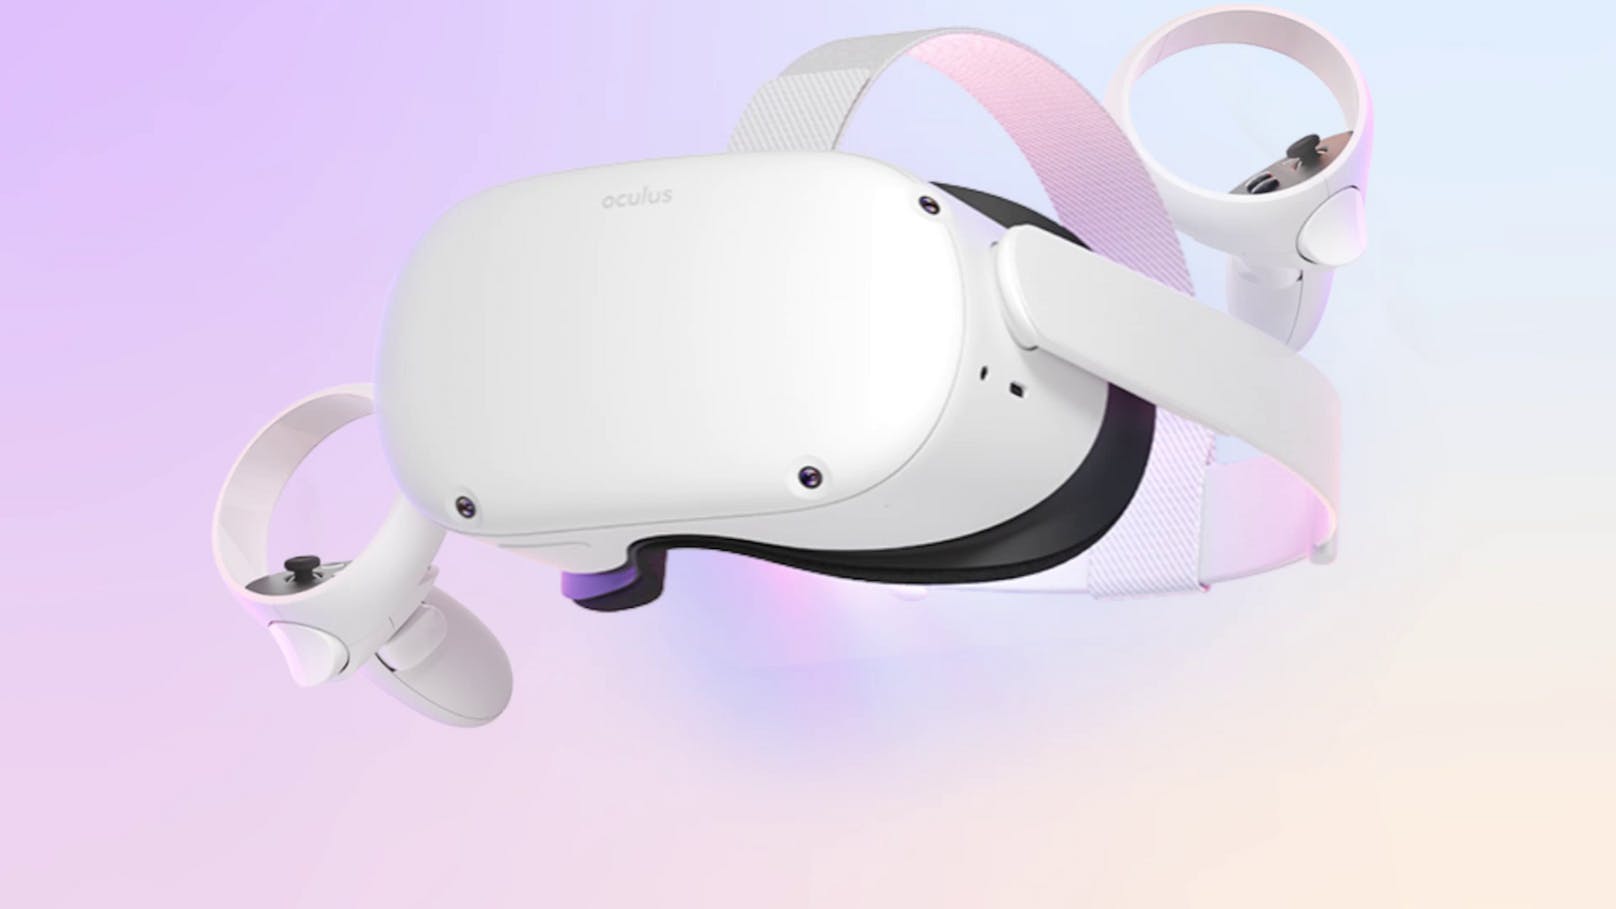 Die Oculus Quest 2 ist die neuste Generation VR-Brille, mit der du in virtuelle Welten eintauchen (und vielleicht dort andere Singles treffen) kannst. 349 Euro , bei Mediamarkt.